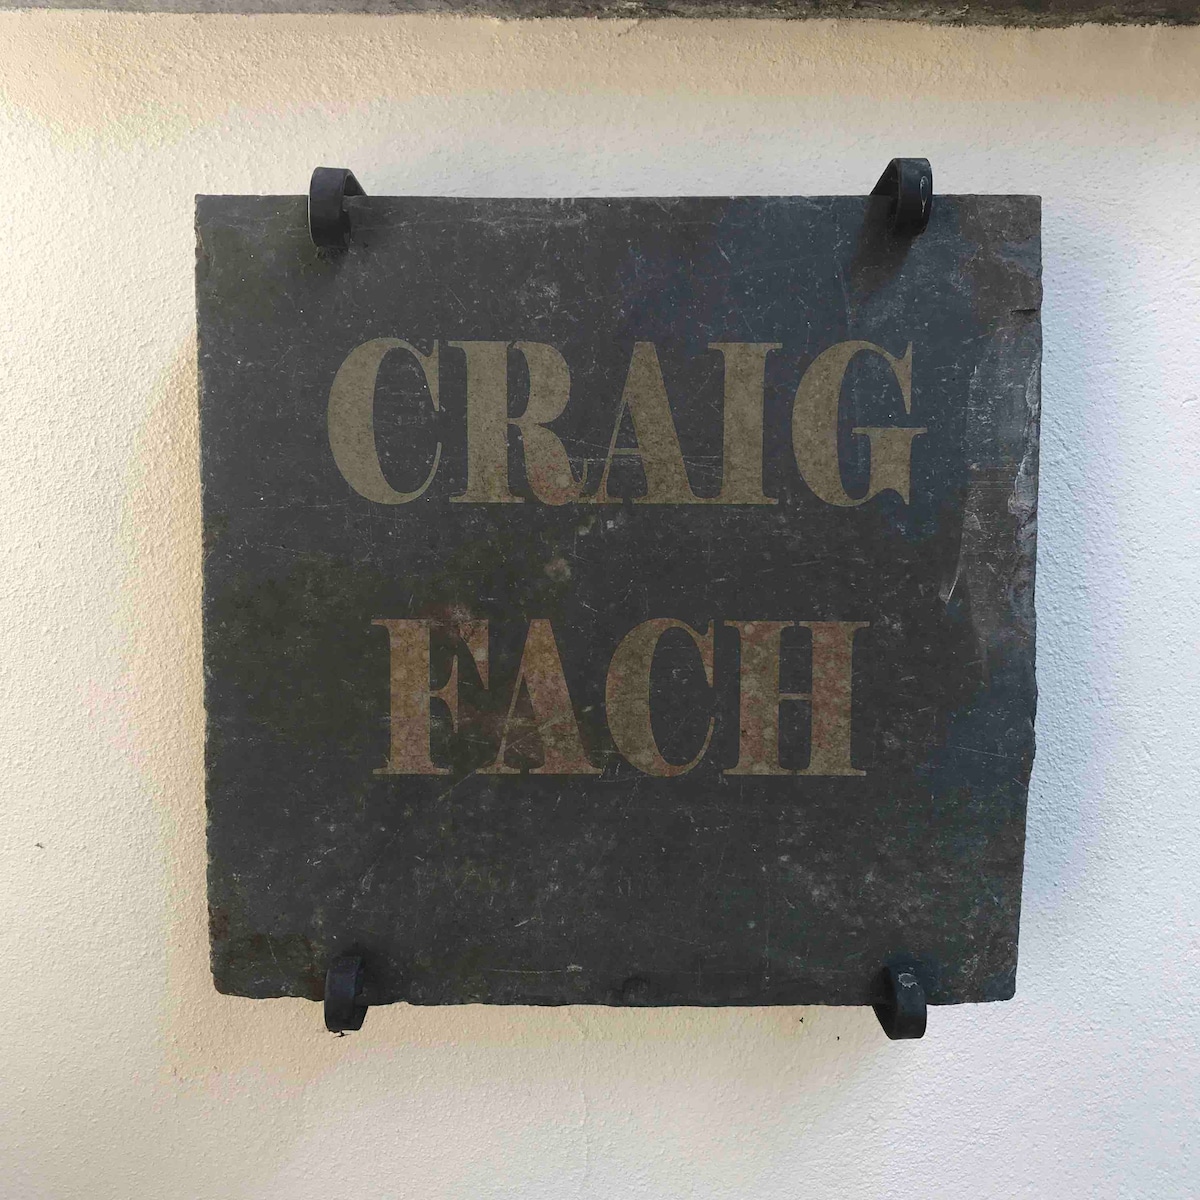 Builth Wells附近的「Craig Fach」乡村教练